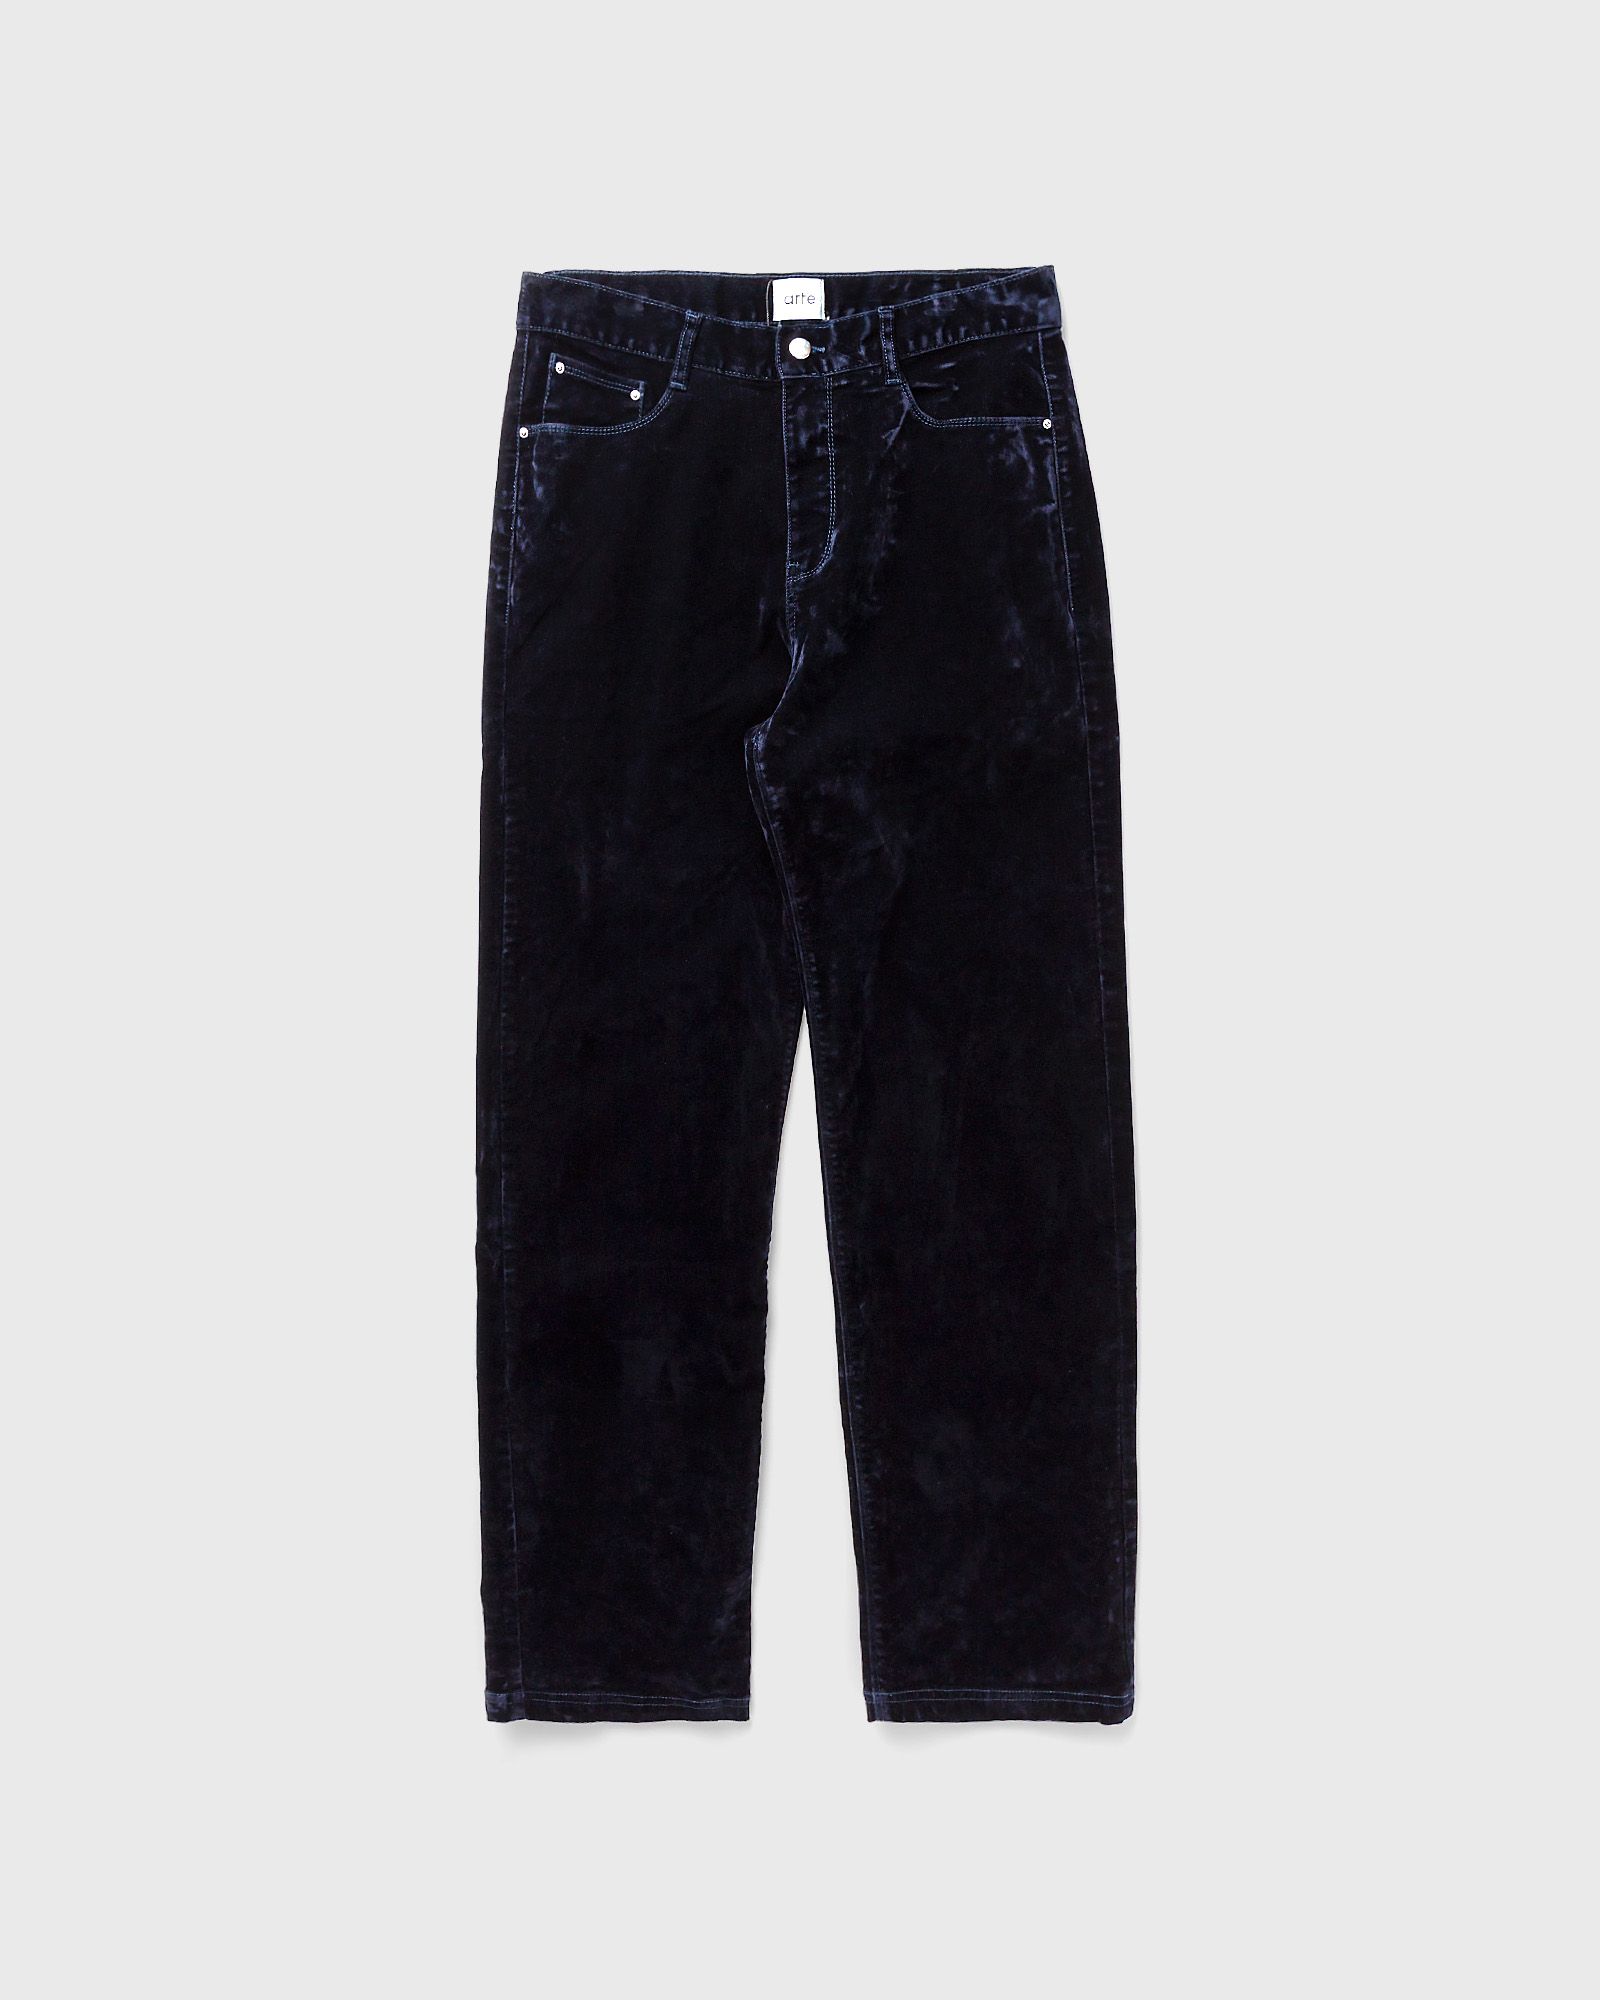 Arte Antwerp - velvet flock jeans men jeans blue in größe:xxl